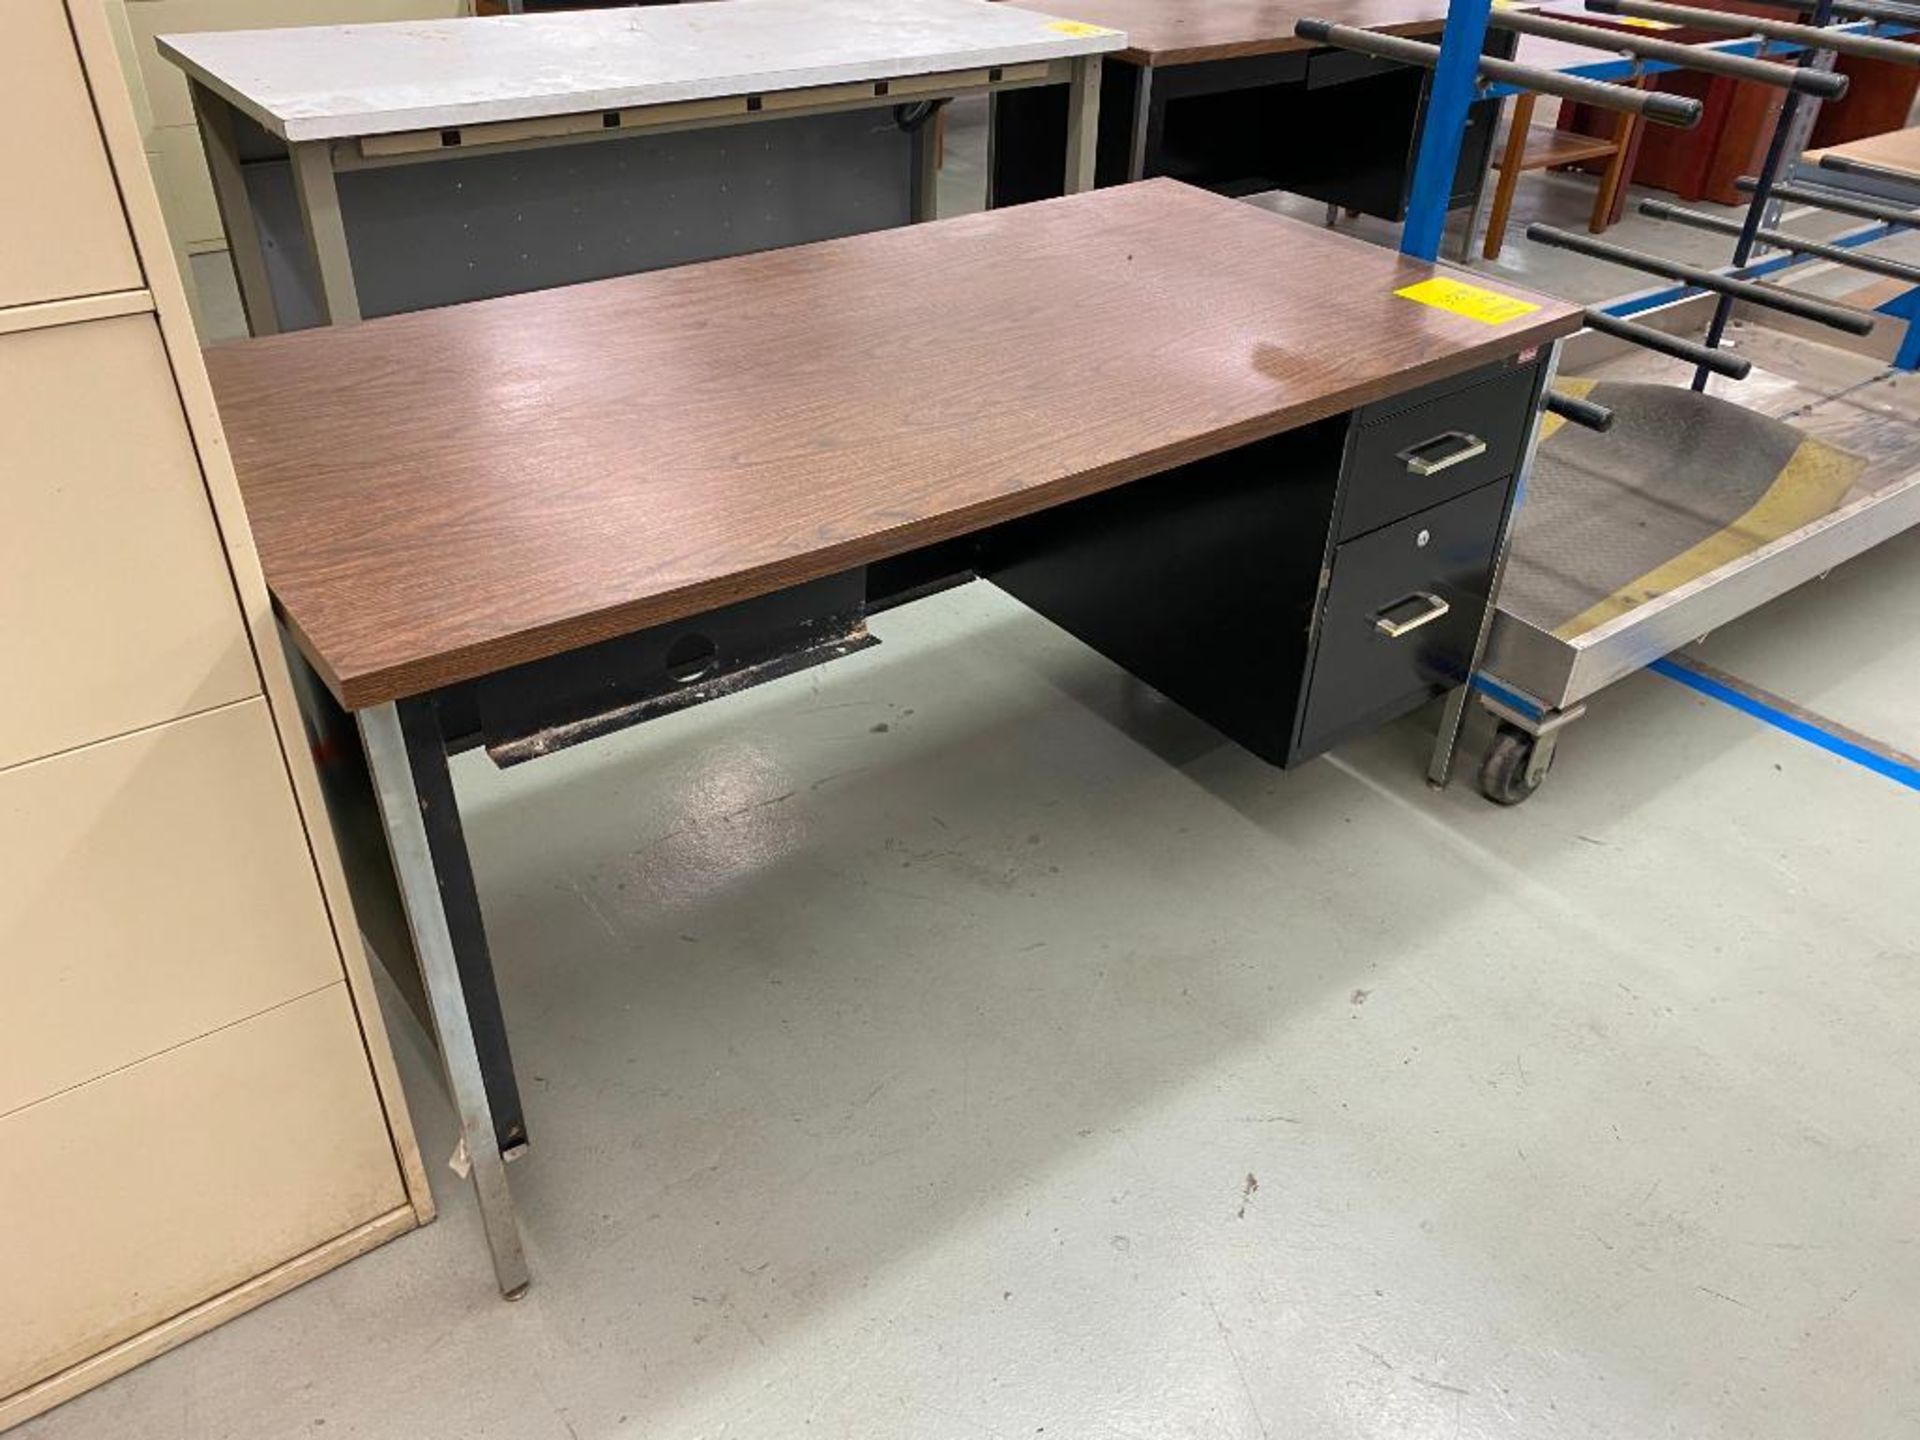 (2) Desks